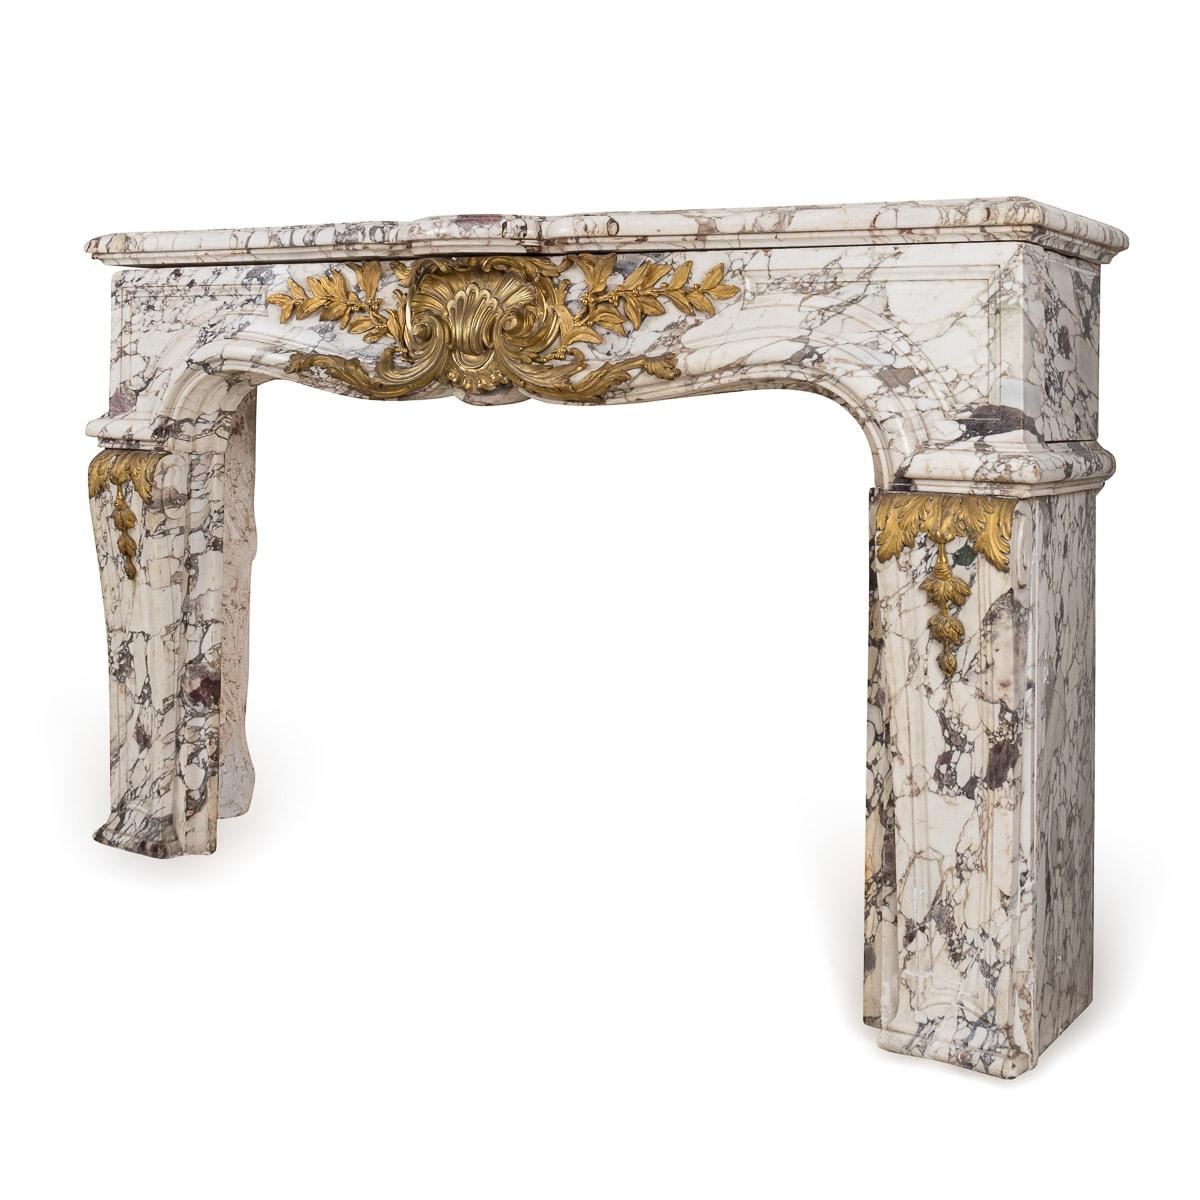 Cheminée française de style Louis XV du milieu du XIXe siècle en marbre Violette. Les jambages incurvés et cannelés sont surmontés de paterae sculptées et montées en bronze doré, d'une frise et d'une tablette moulurée. Cette superbe cheminée ajoute